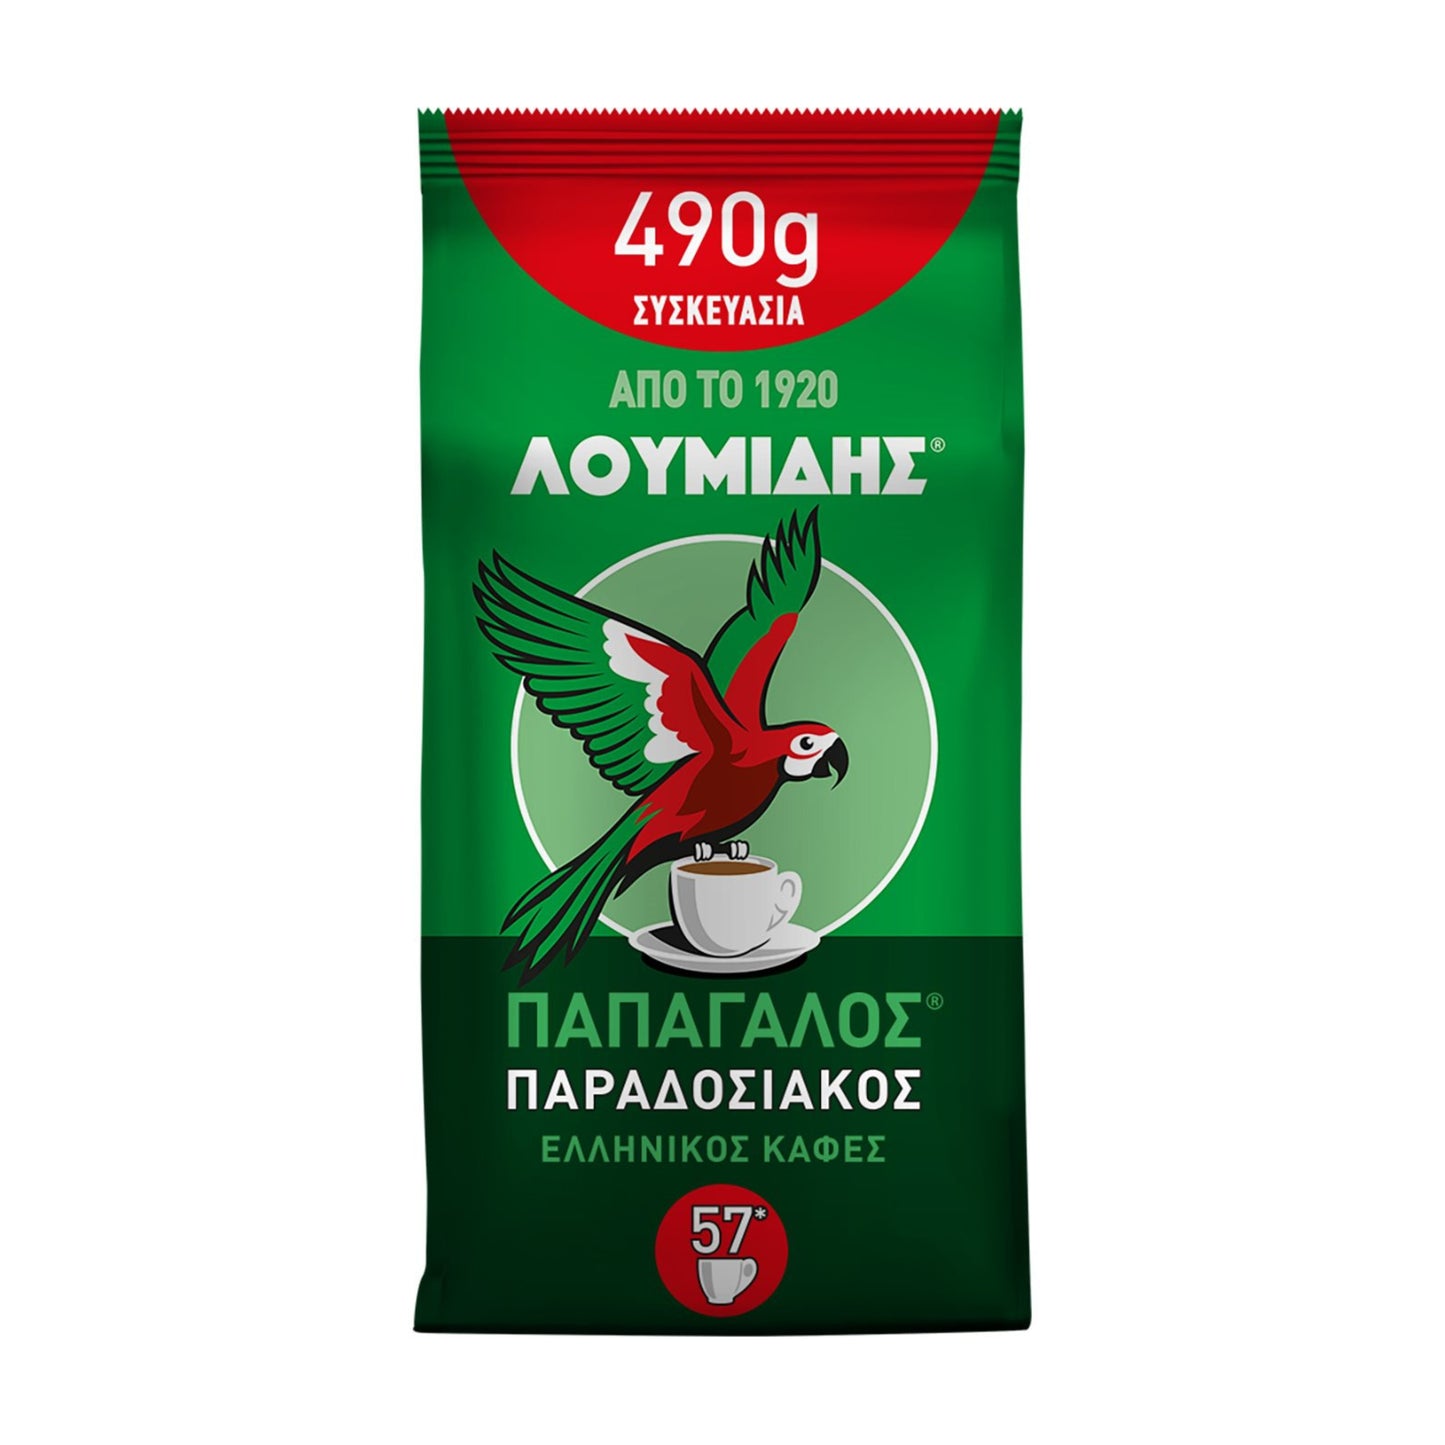 Griechischer Kaffee Loumidis - 490g